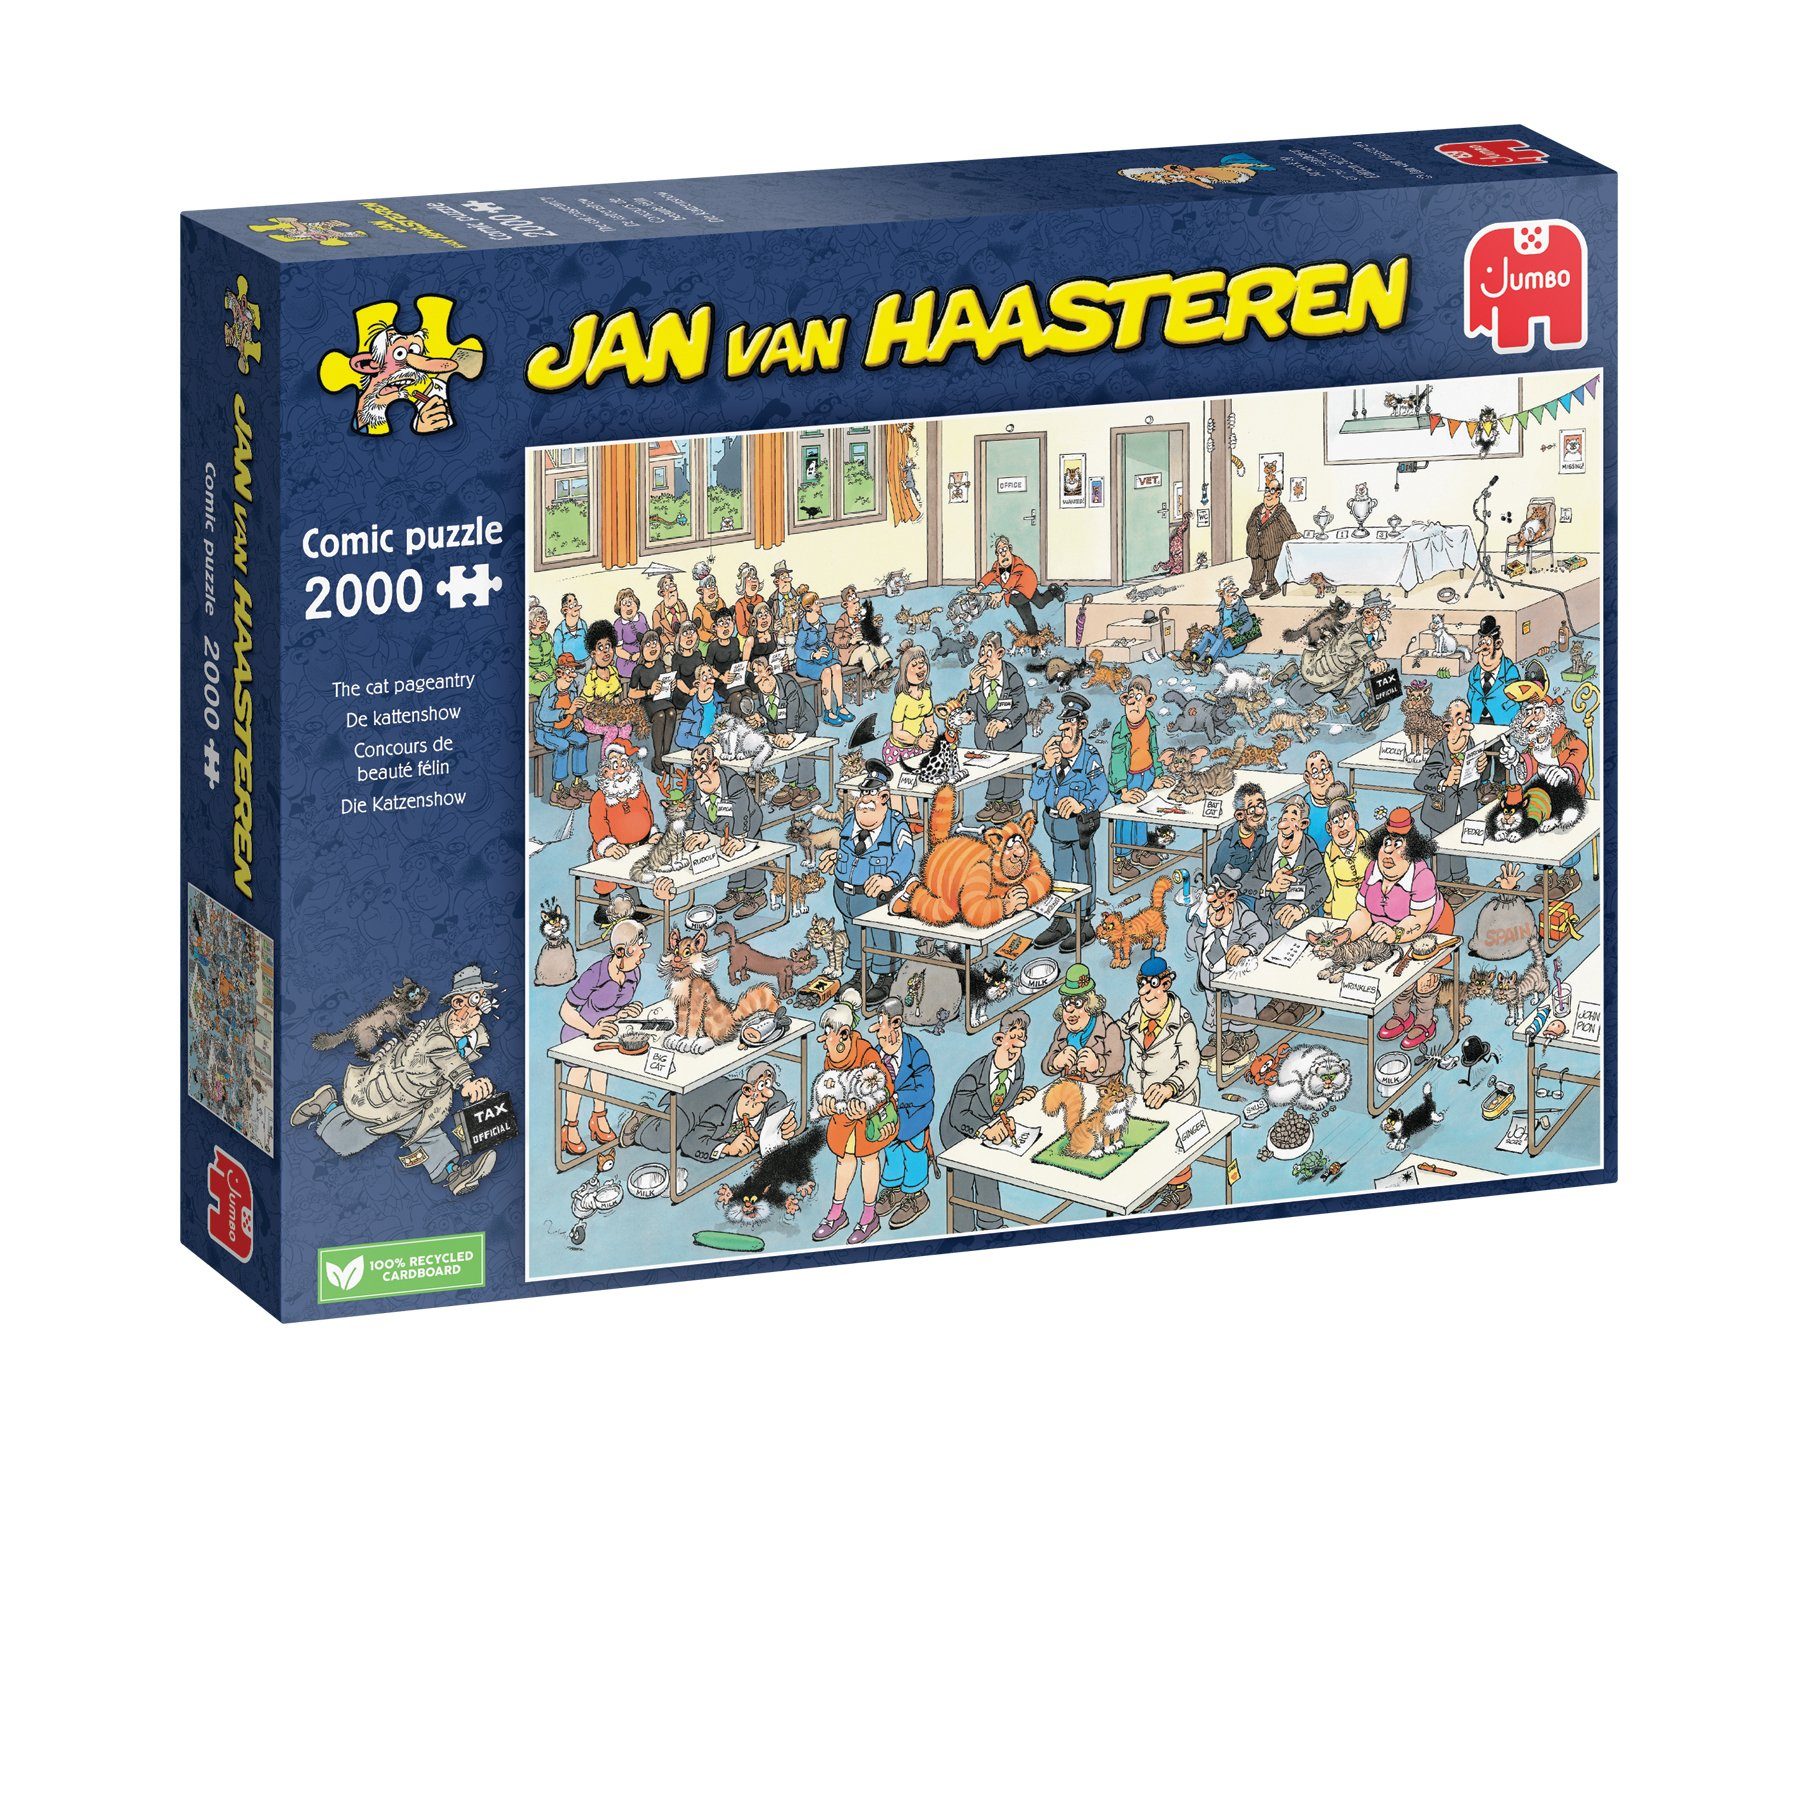 Jumbo Spiele Puzzle 1110100033 Jan van Haasteren Die Katzenshow 2000T, 2000 Puzzleteile